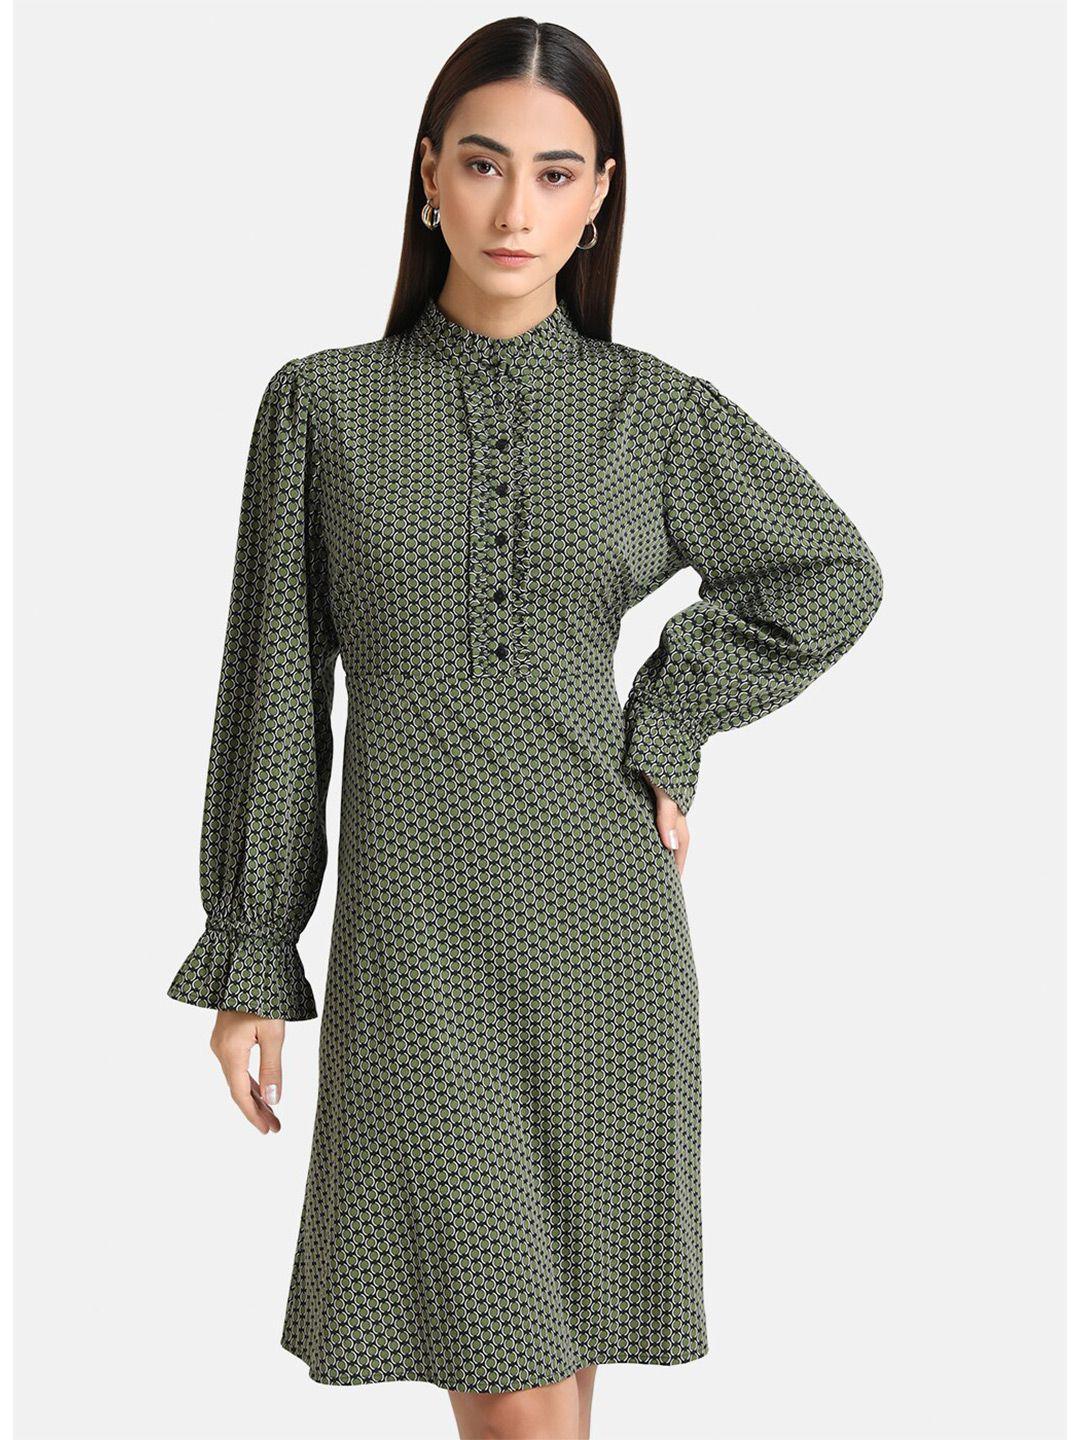 kazo women green & black printed a-line dress